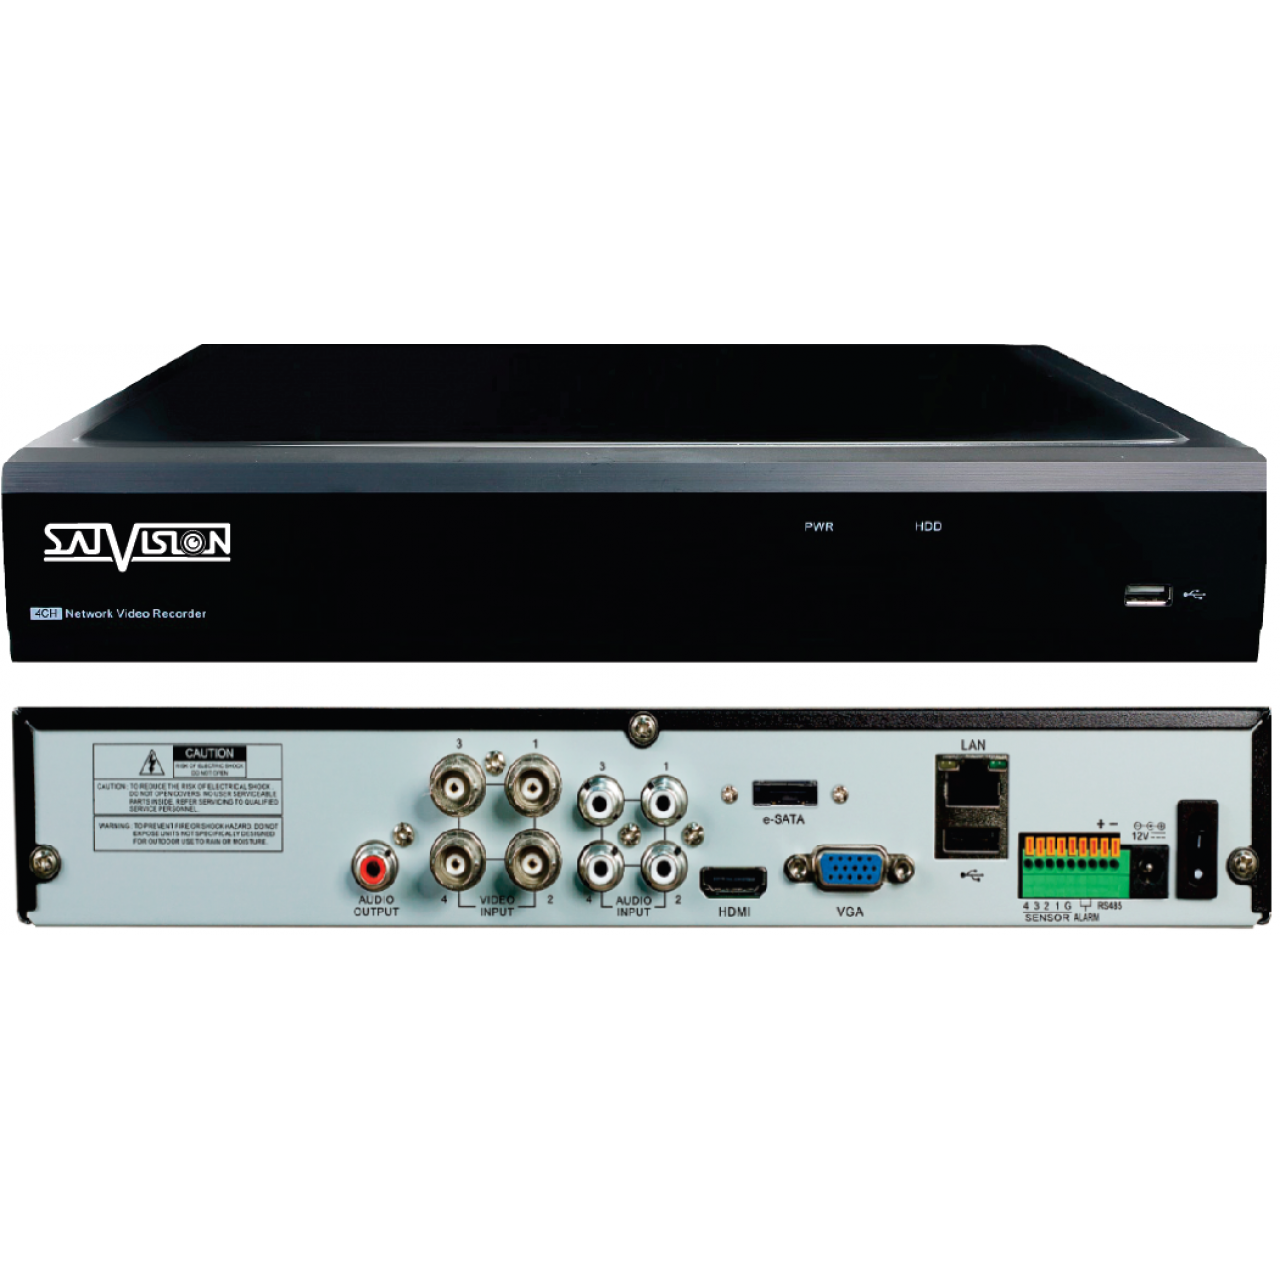 Гибридный 4-х канальный видеорегистратор SVR-4115F v2.0